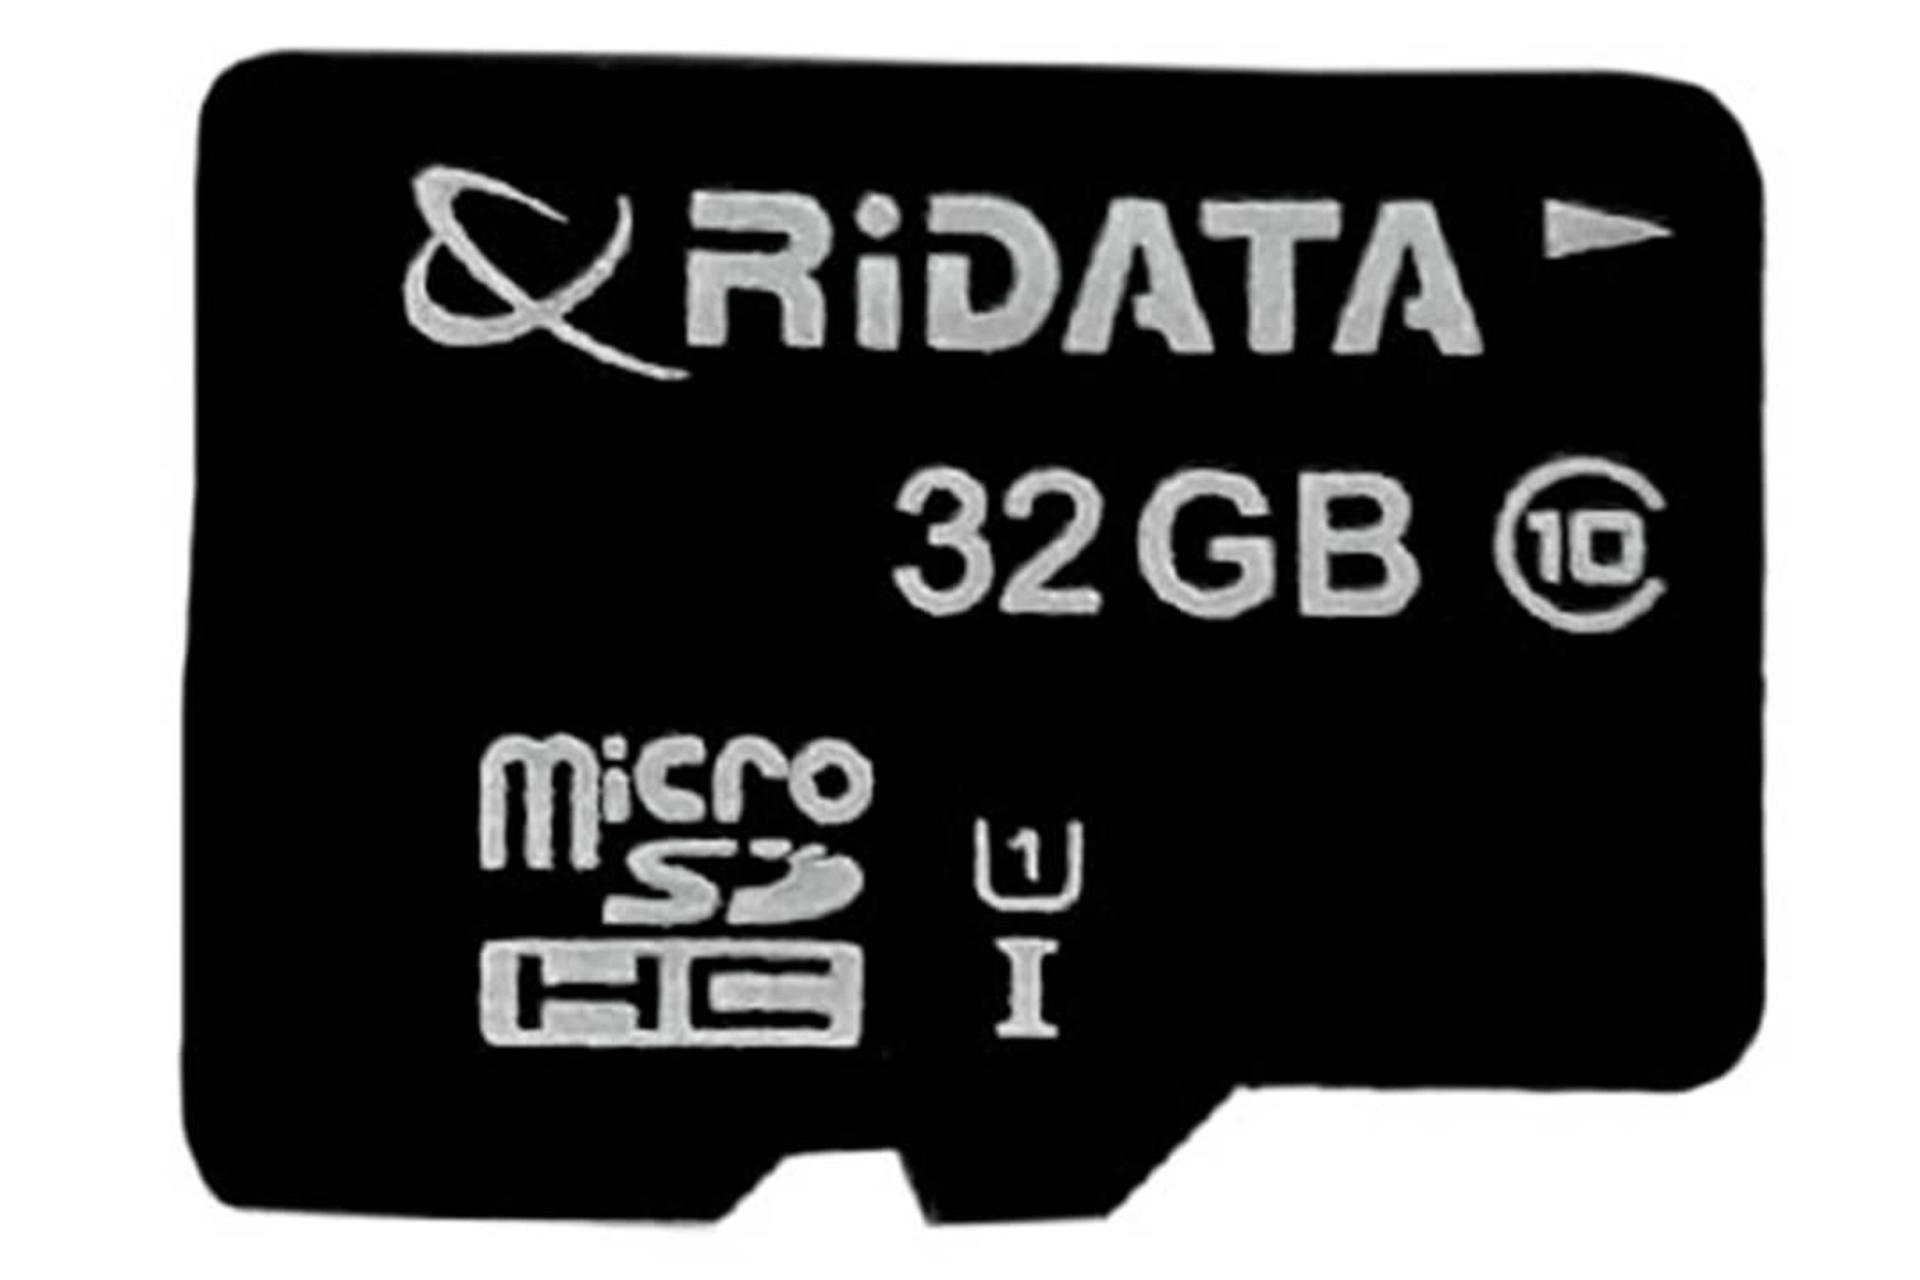 مرجع متخصصين ايران RiDATA microSDHC Class 10 UHS-I U1 32GB